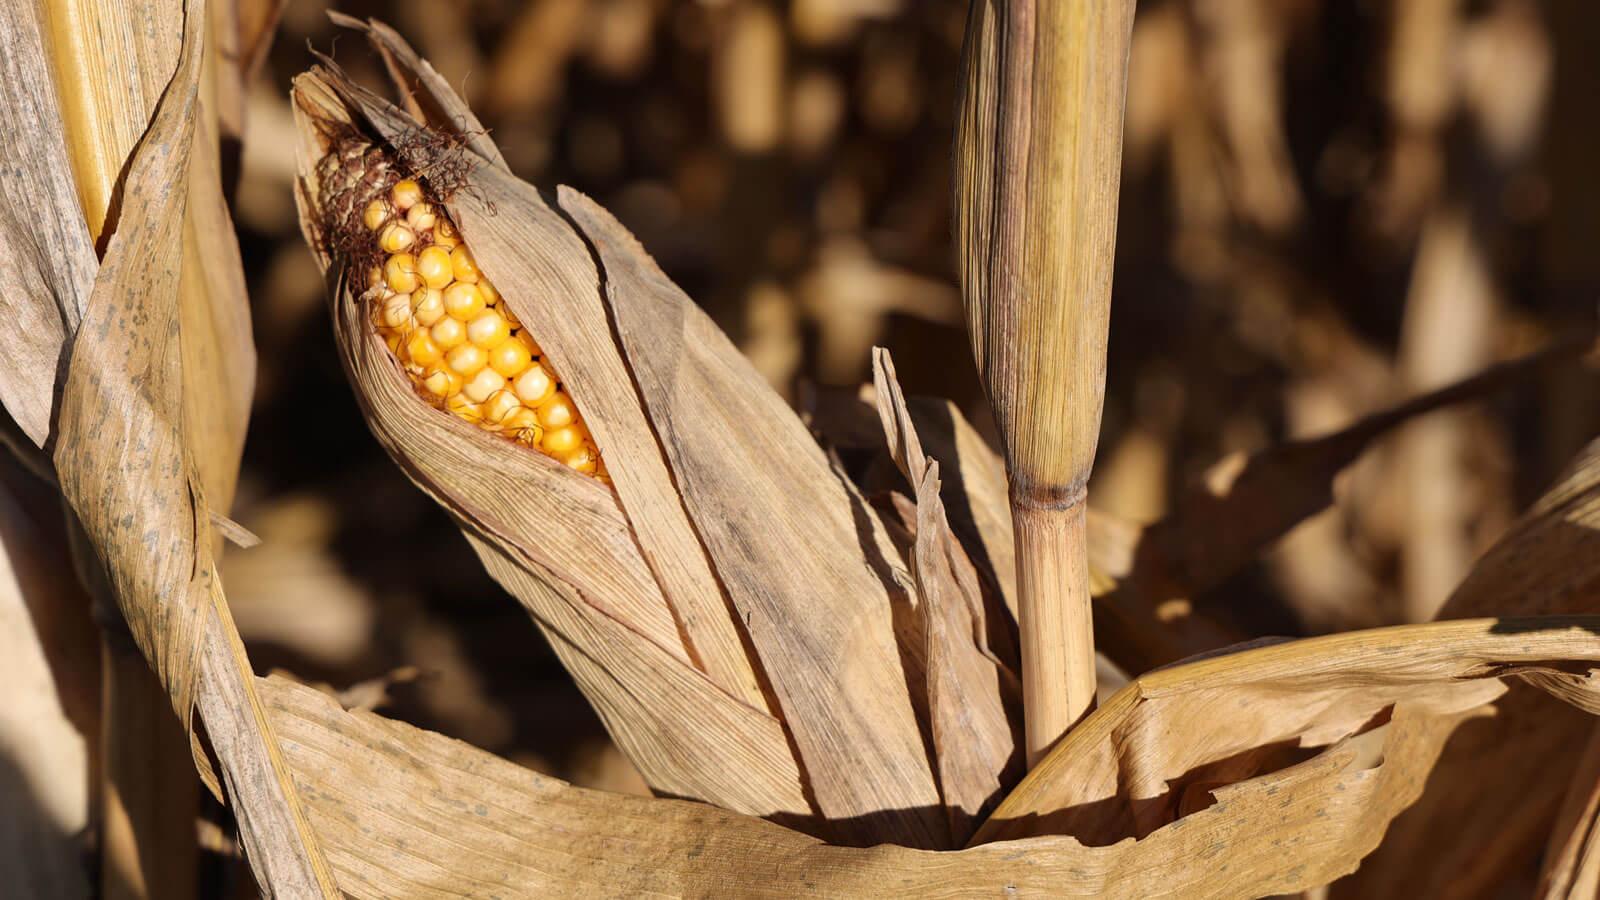 Stalk of corn.